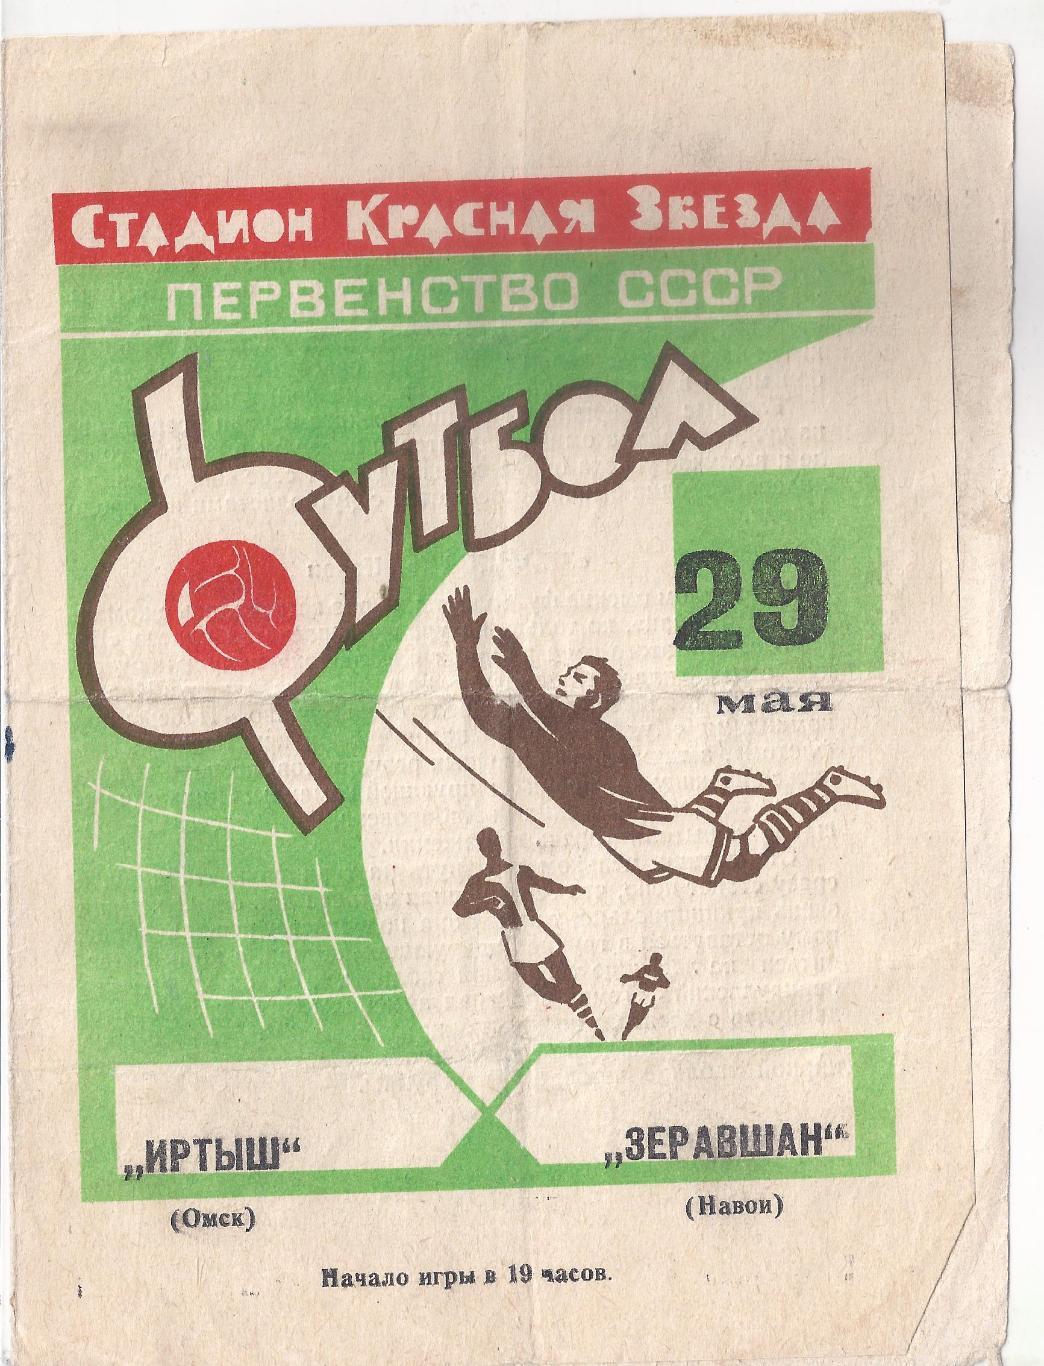 1968 - Иртыш Омск - Зеравшан Навои